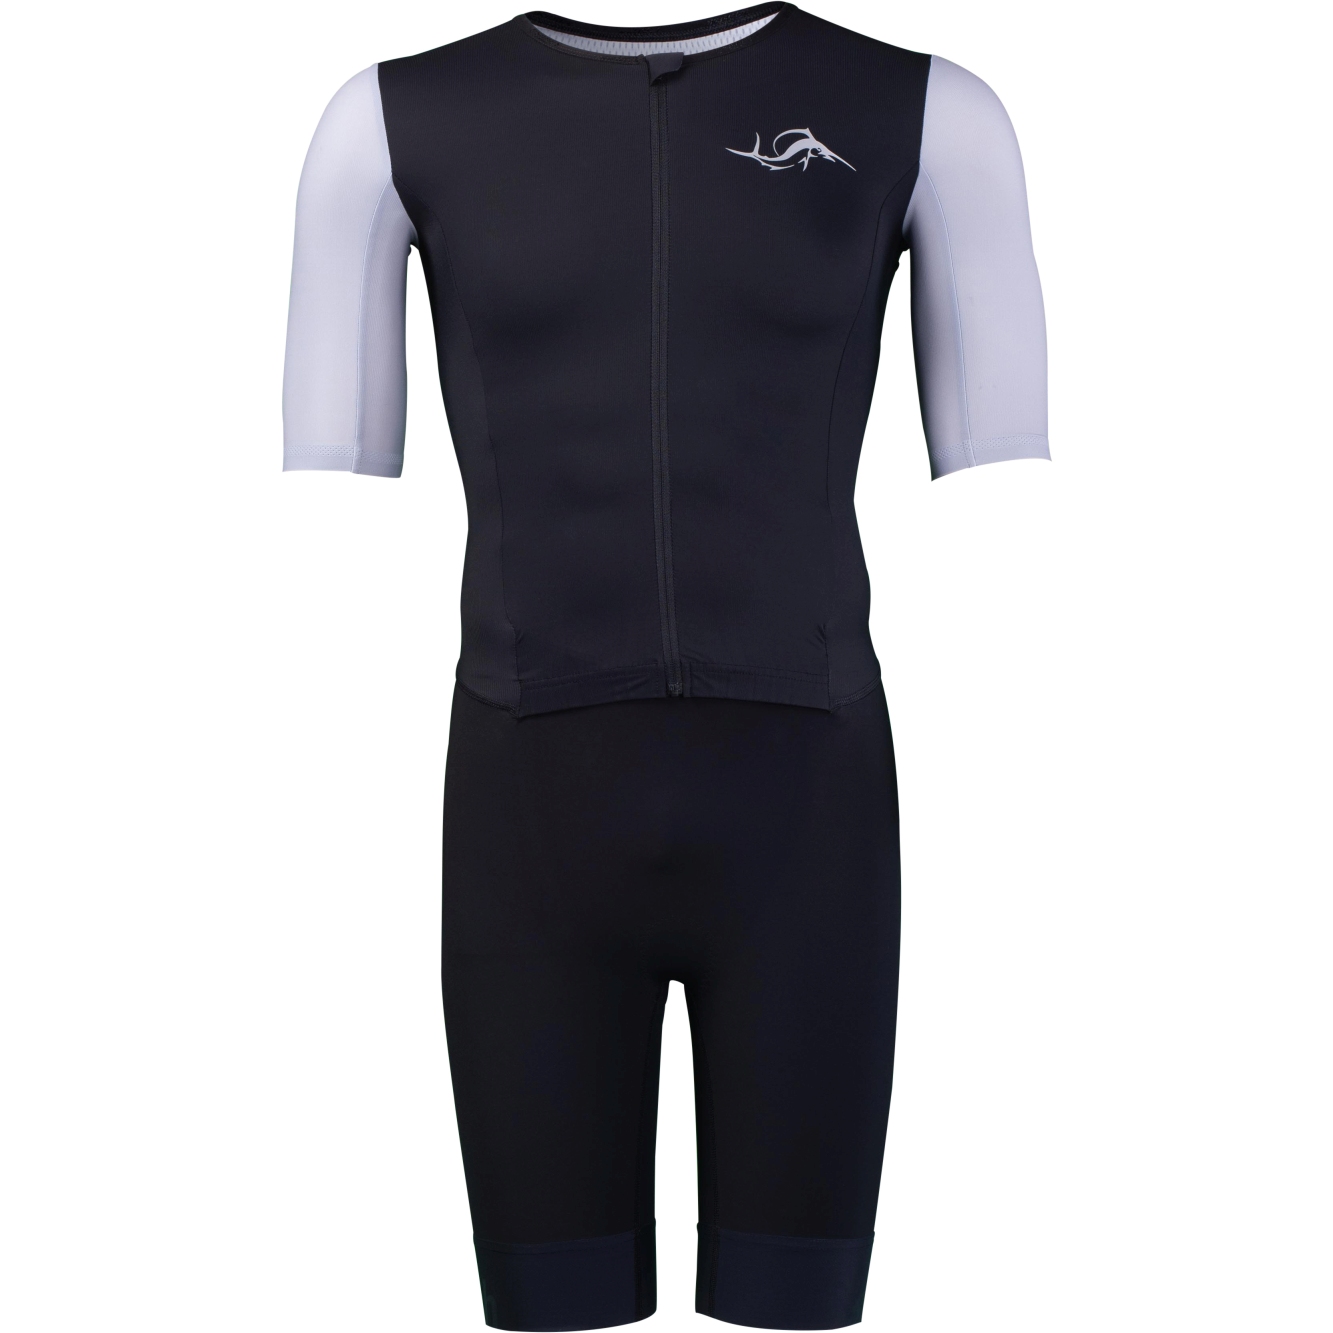 Produktbild von sailfish Aerosuit Perform Triathlon-Einteiler Herren - schwarz